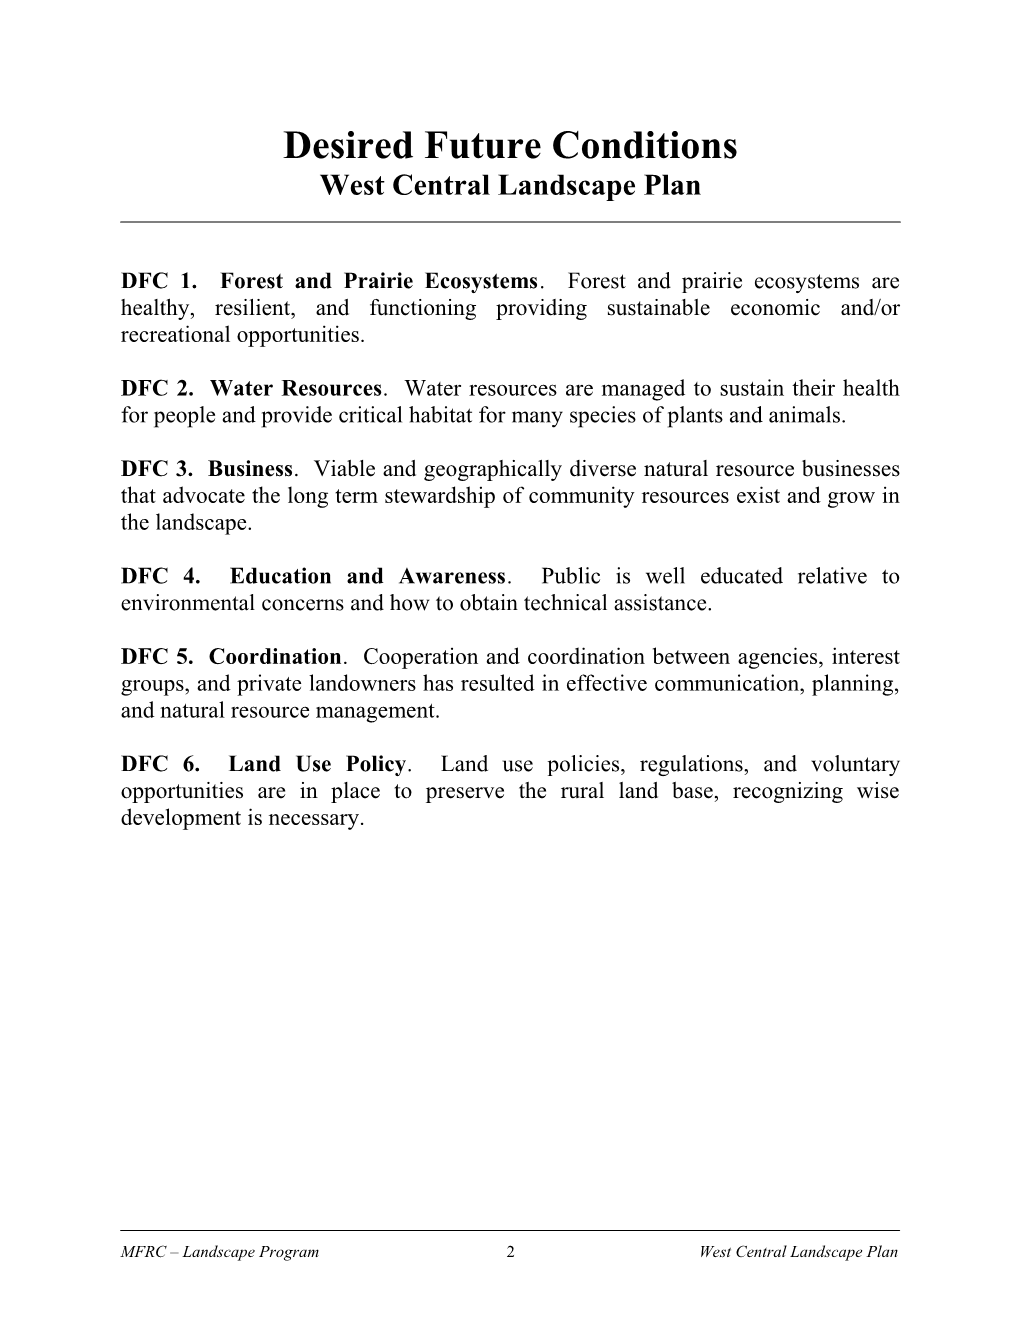 Strategic Policy Framework: West Central Landscape Plan